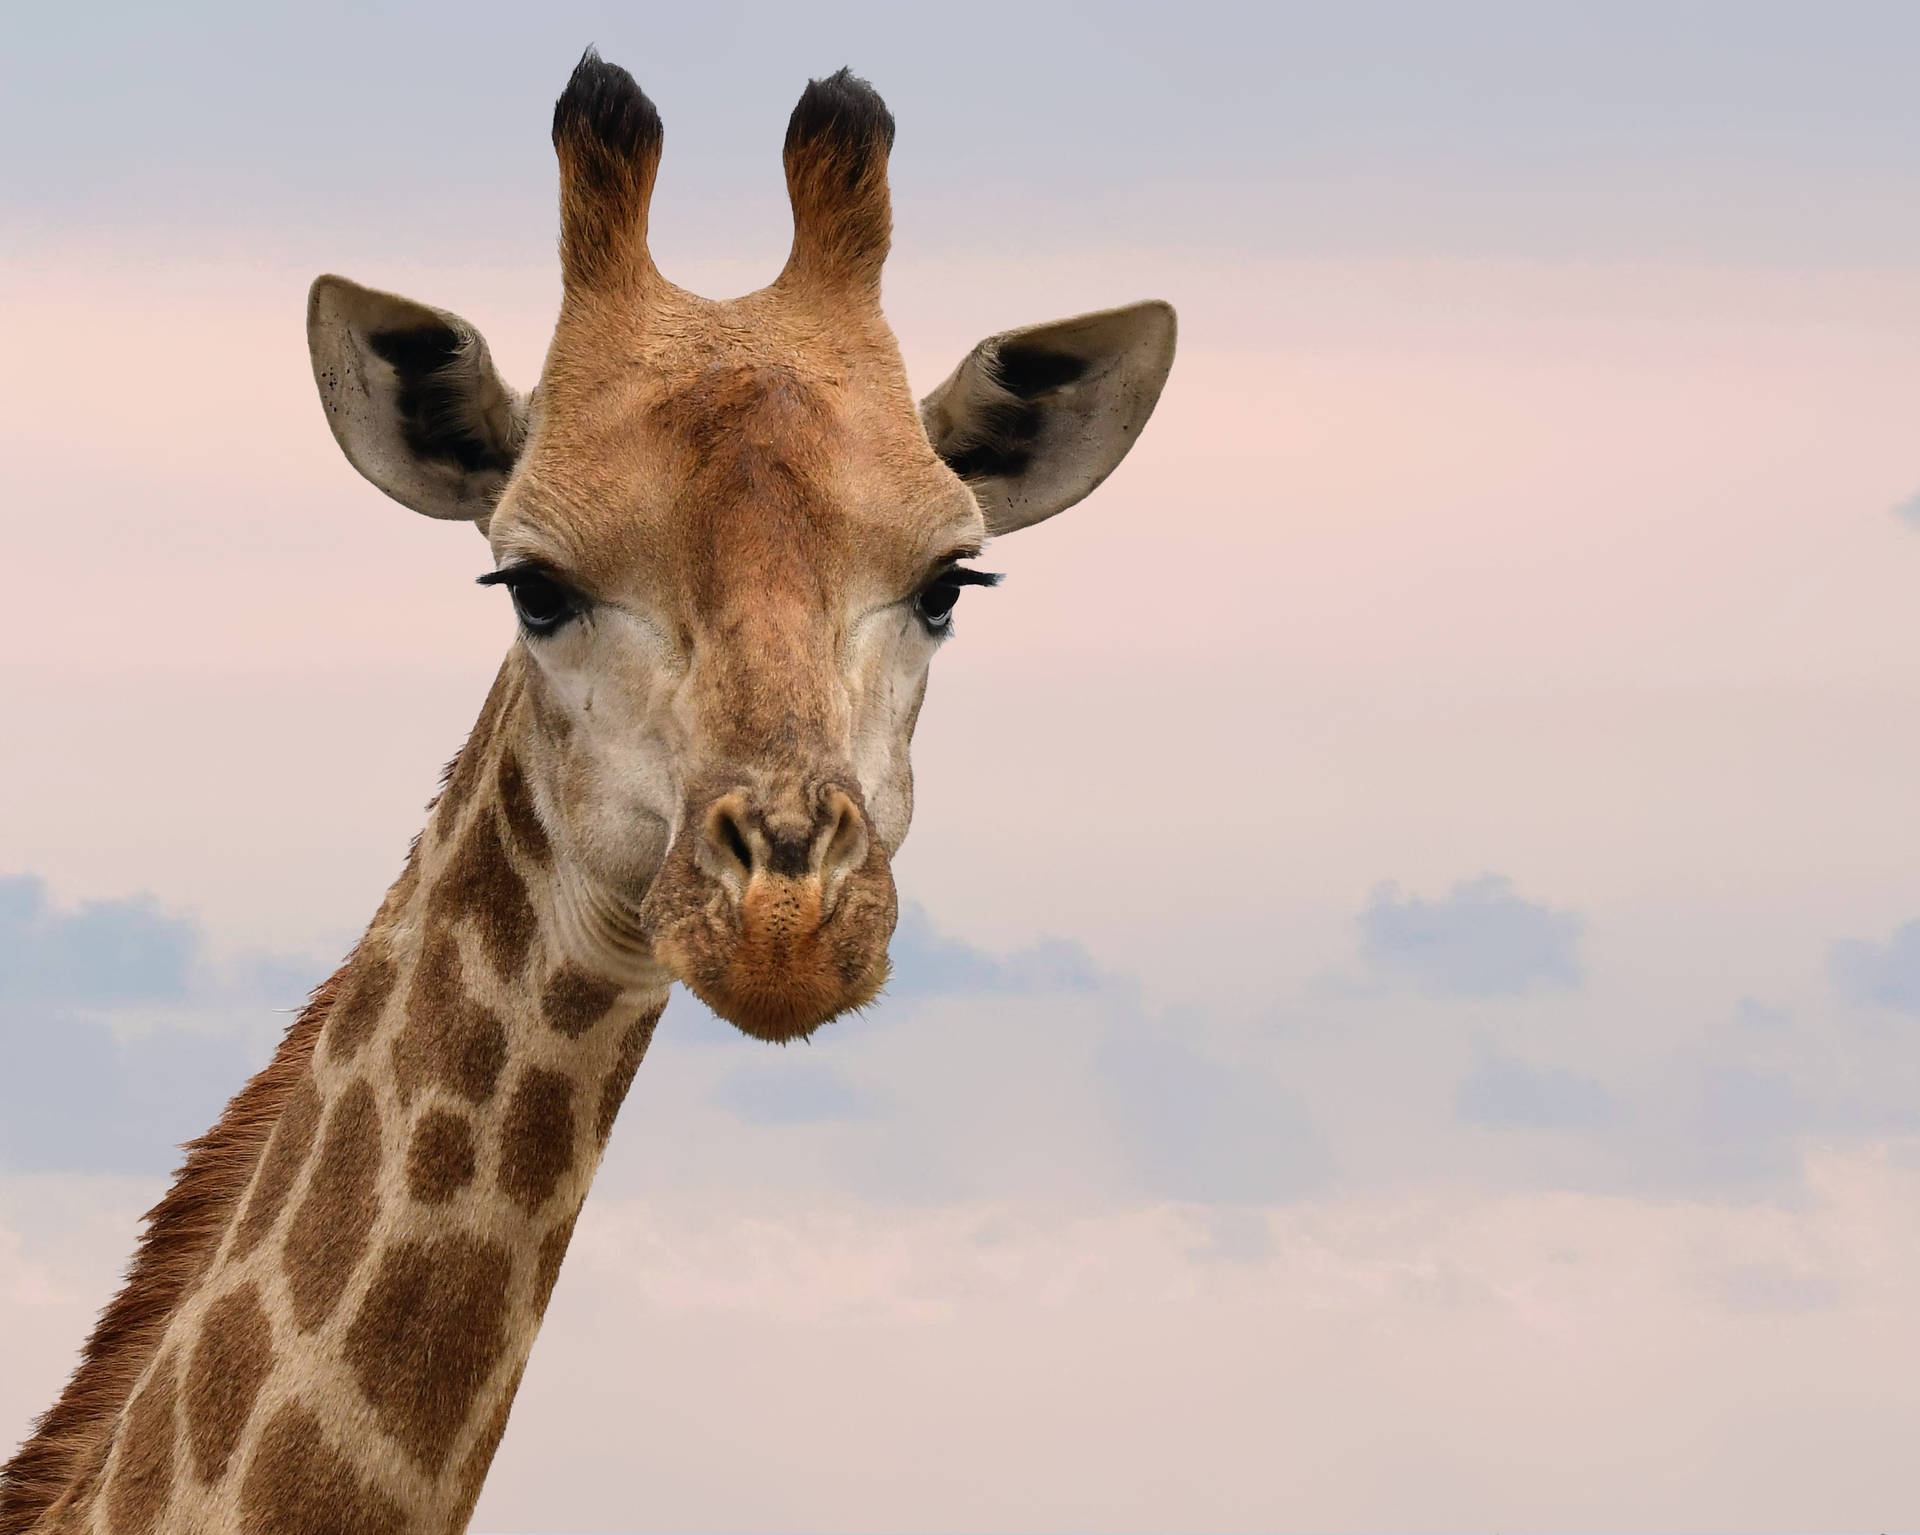 Cute Animal Giraffe Face